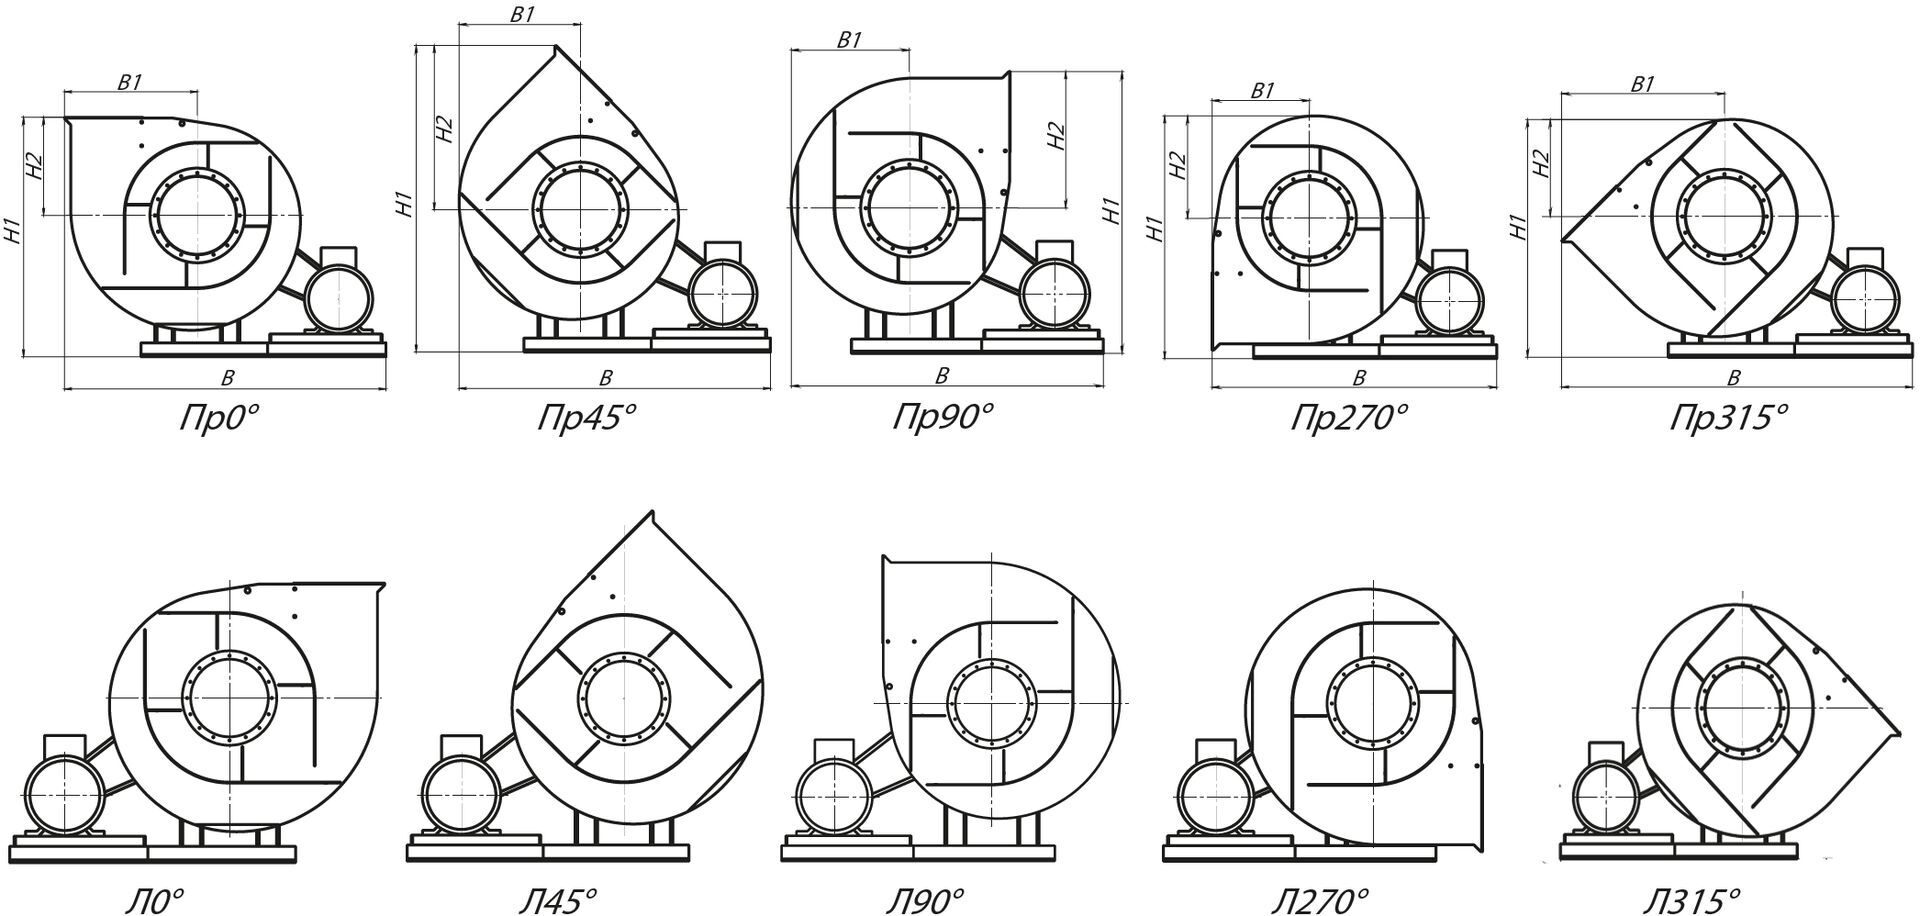 Стандартные варианты углов поворота корпуса вентиляторов ВР 132-30-10 схема 5 (исполнение 5)